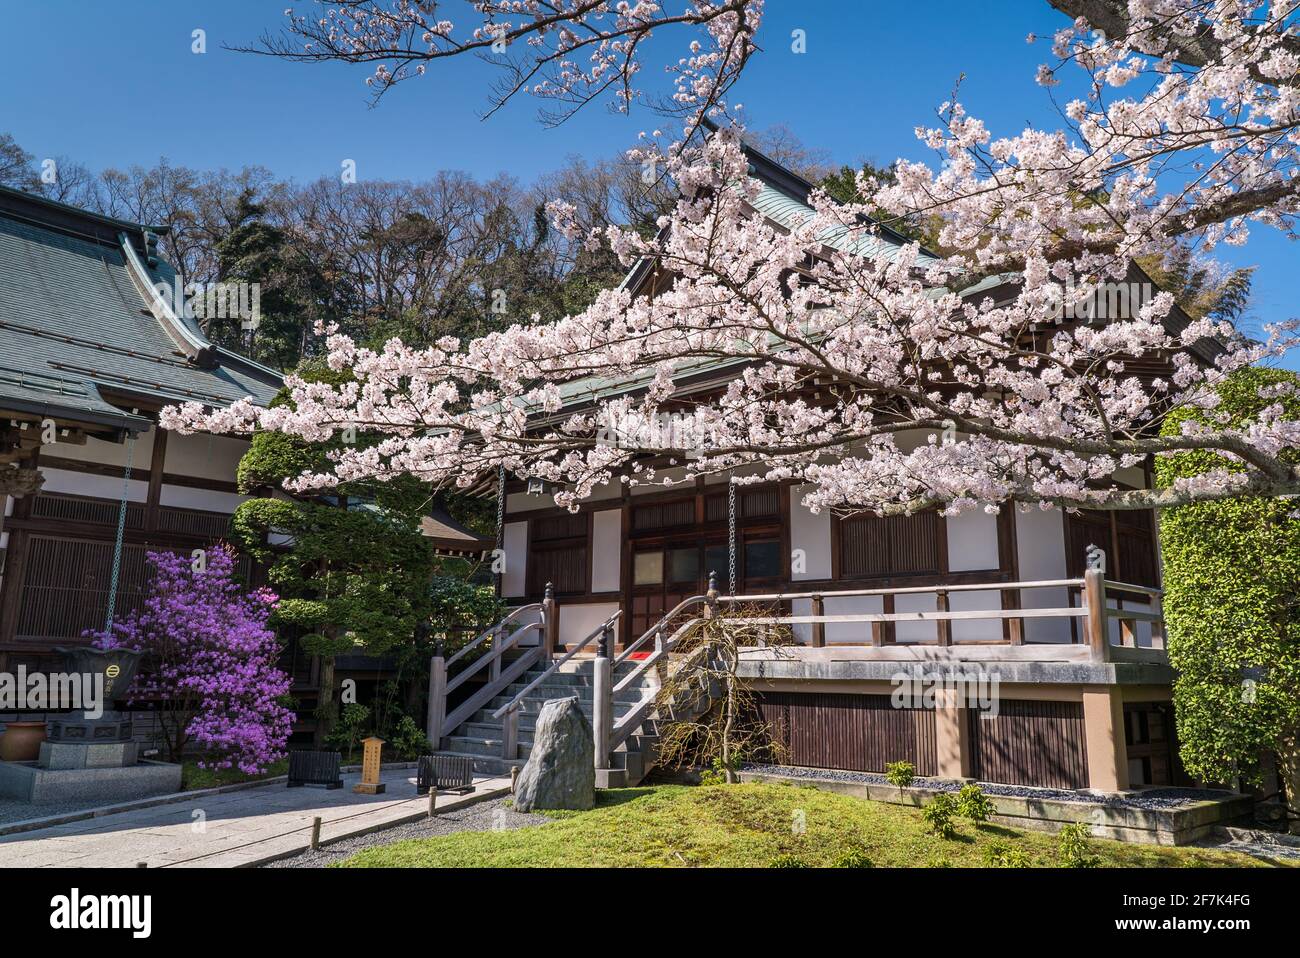 Hokoku-ji Buddhist Temple in Kamakura during Sakura Season. Pink flowers from sakura cherry blossom trees in full bloom. Stock Photo